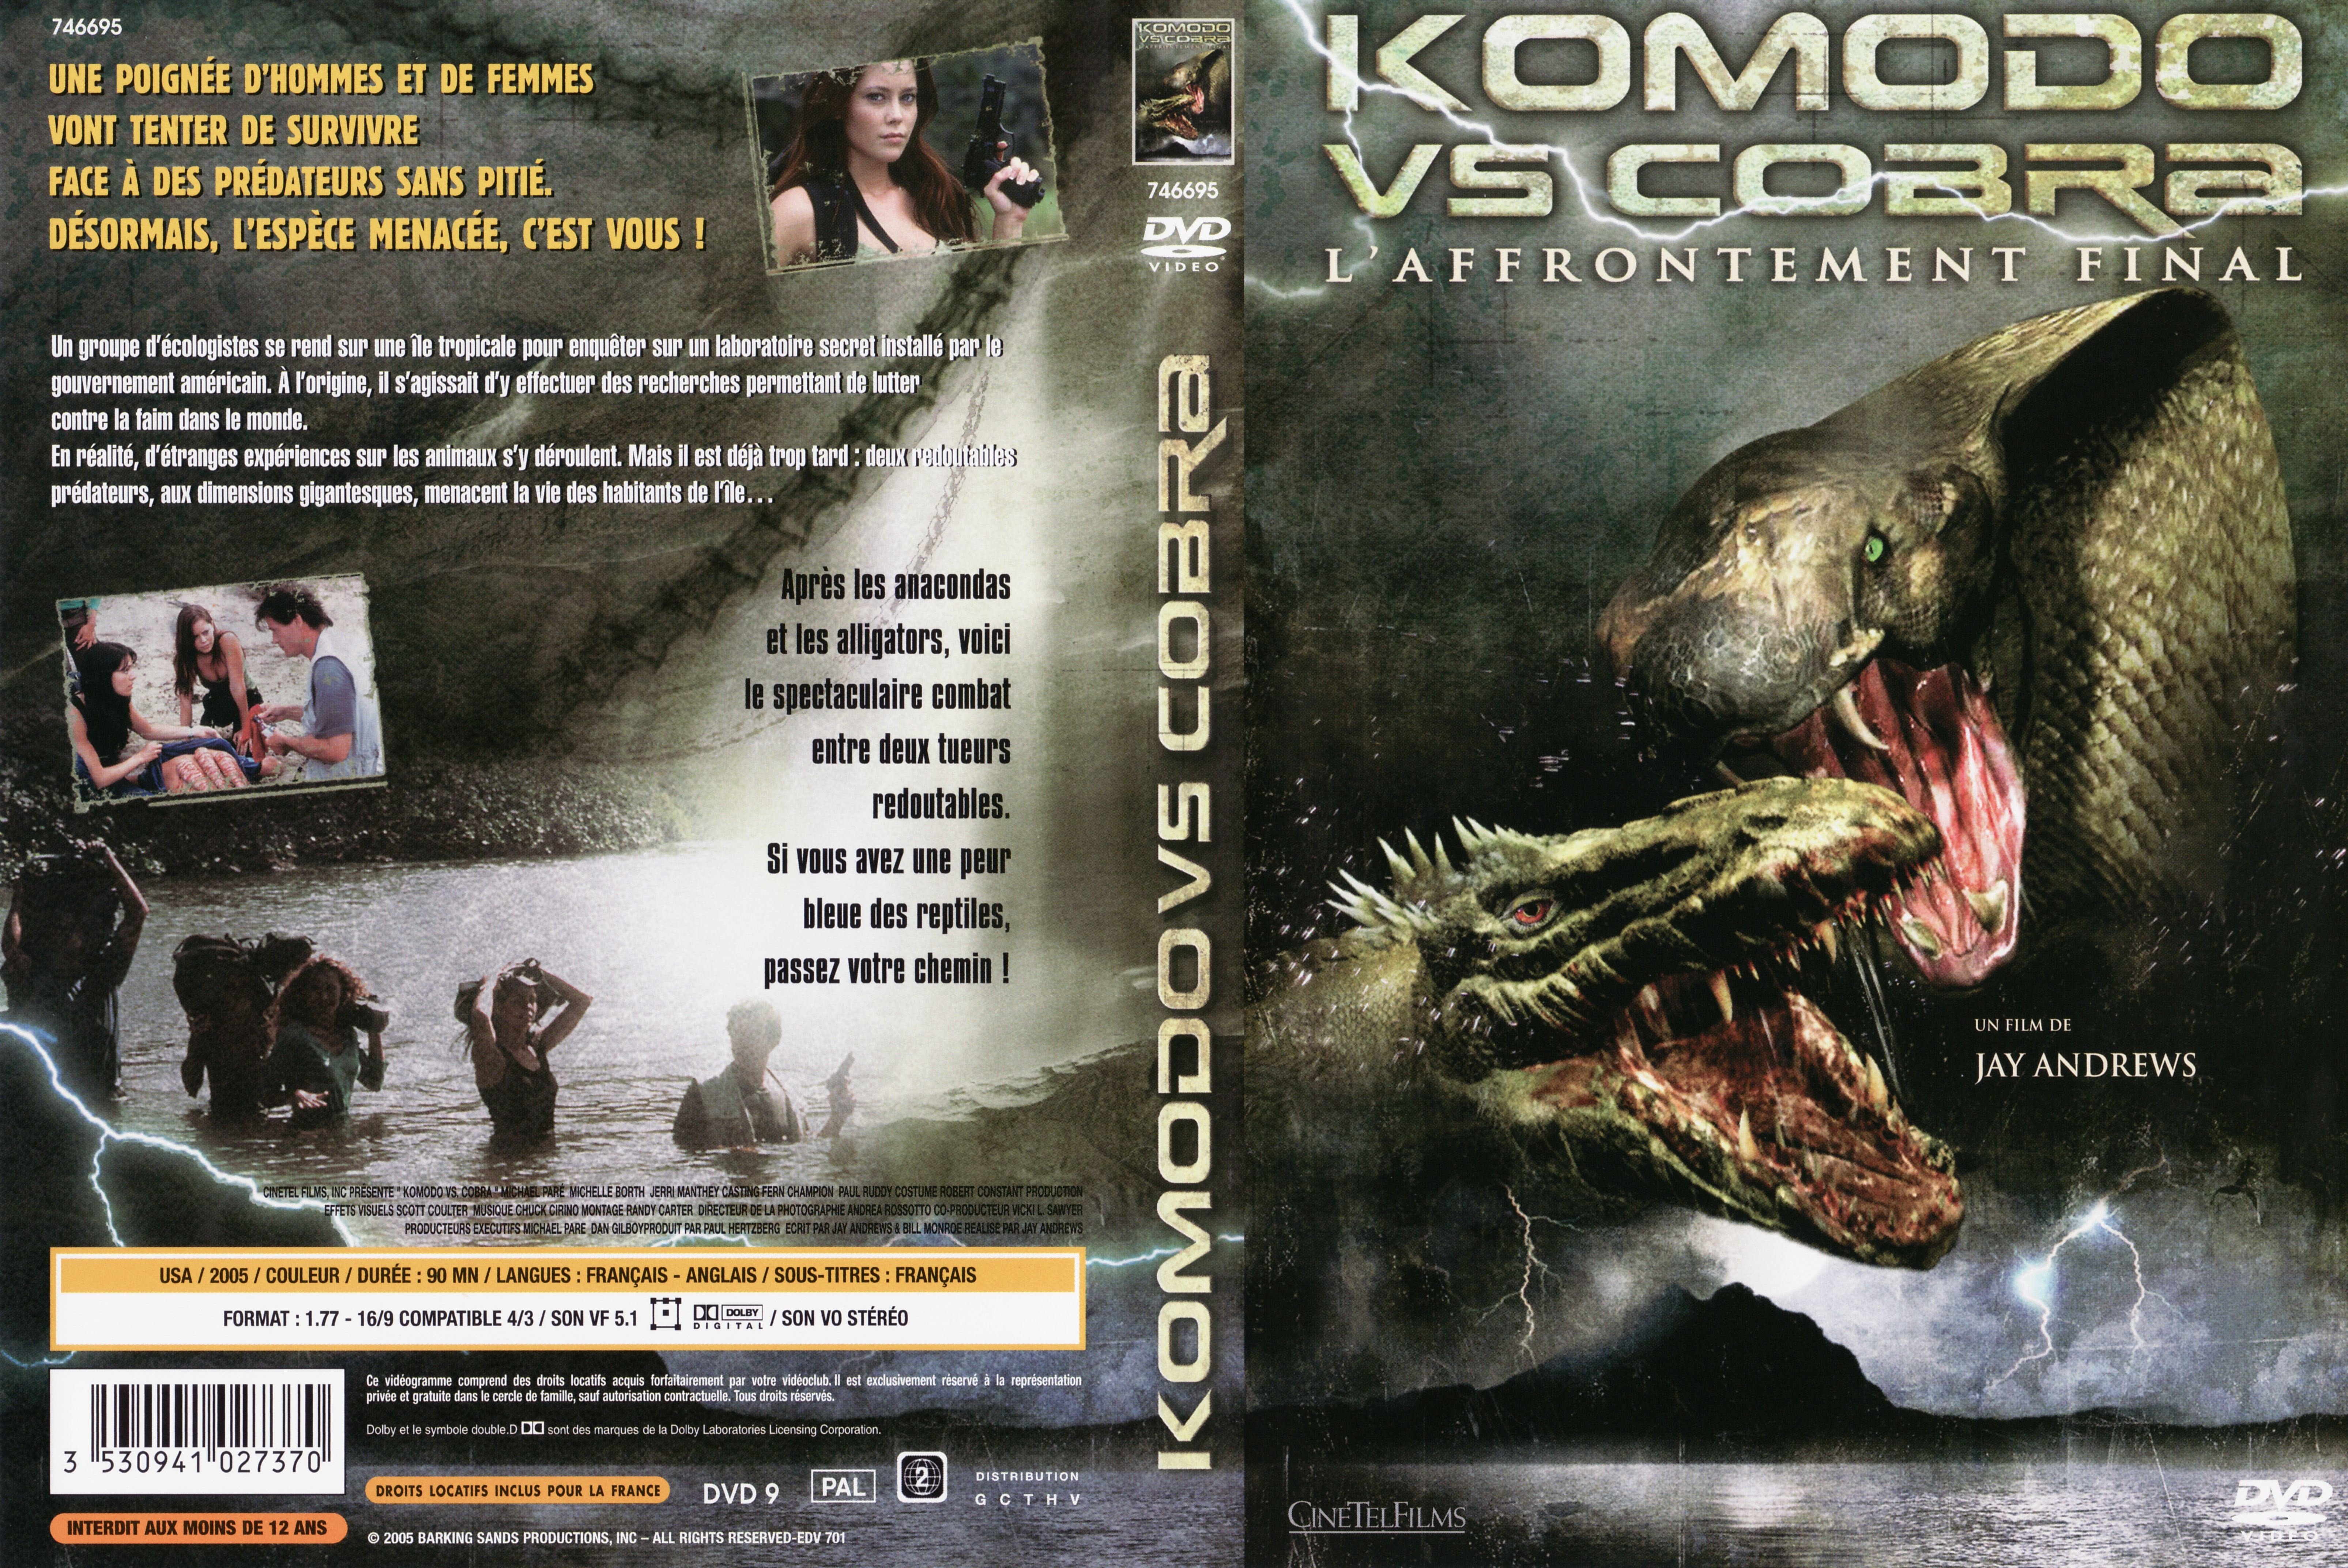 Jaquette DVD Komodo Vs Cobra